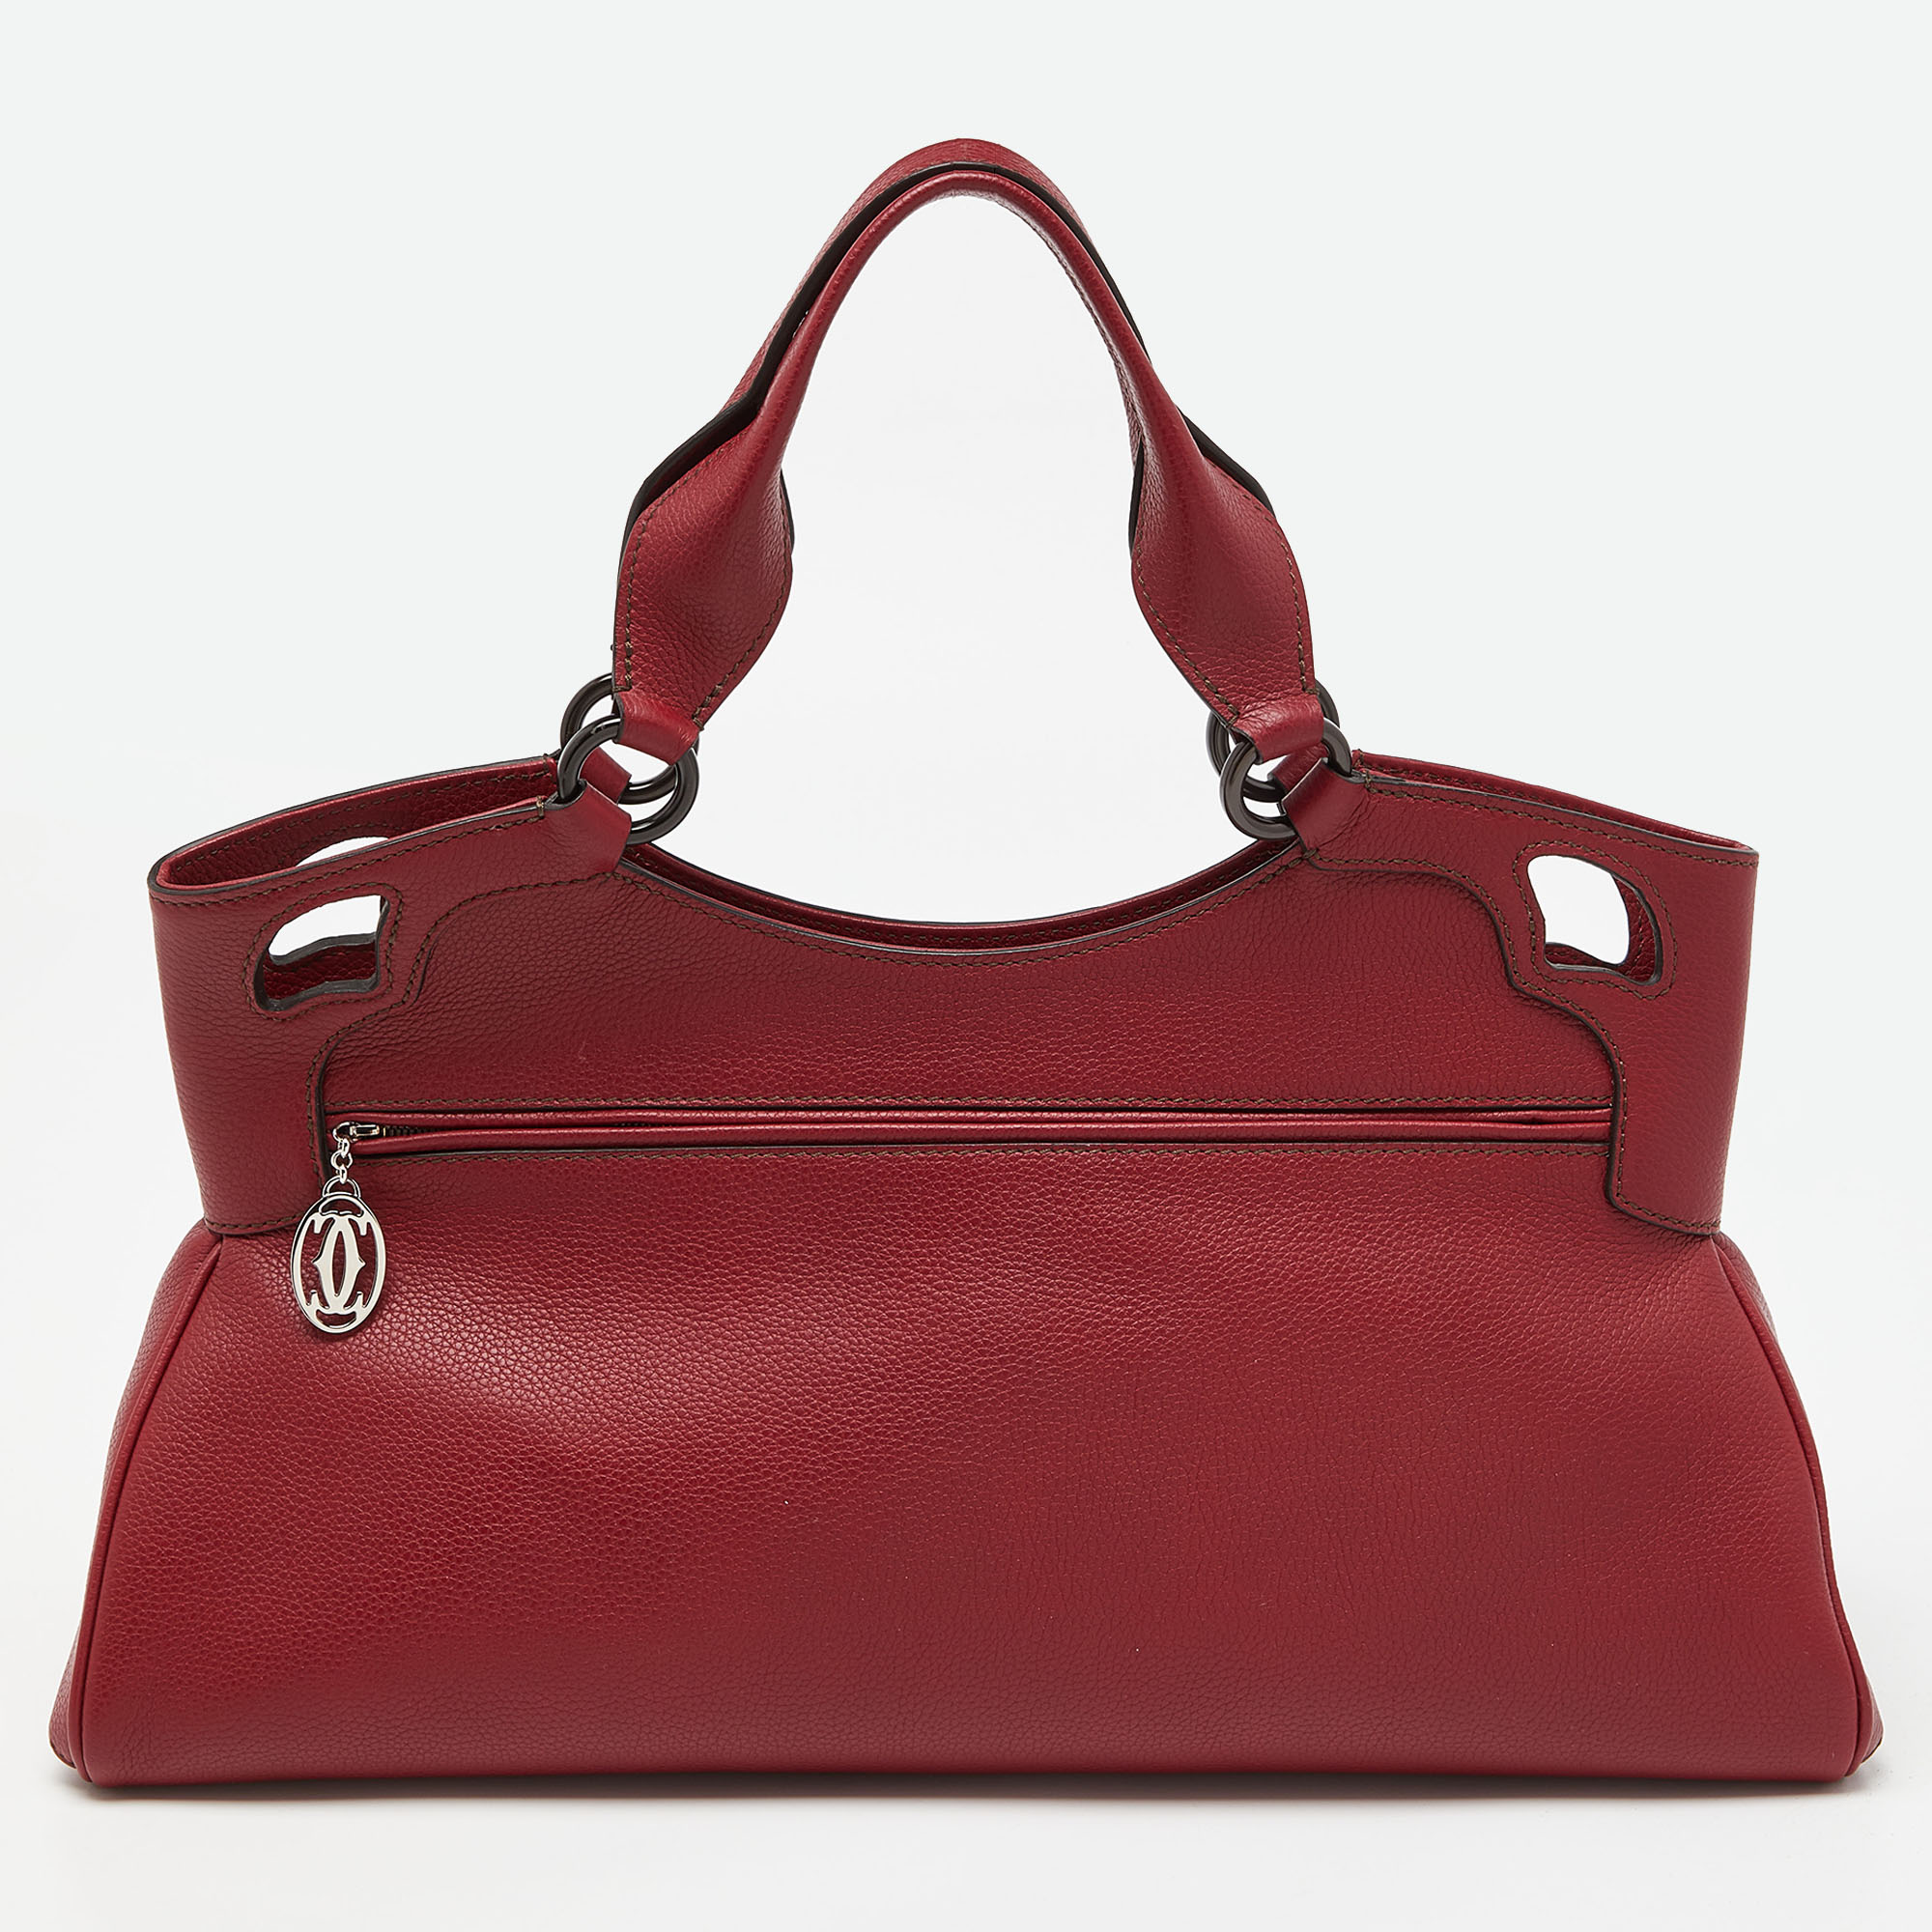 Cartier Red Leather Medium Marcello De Cartier Bag